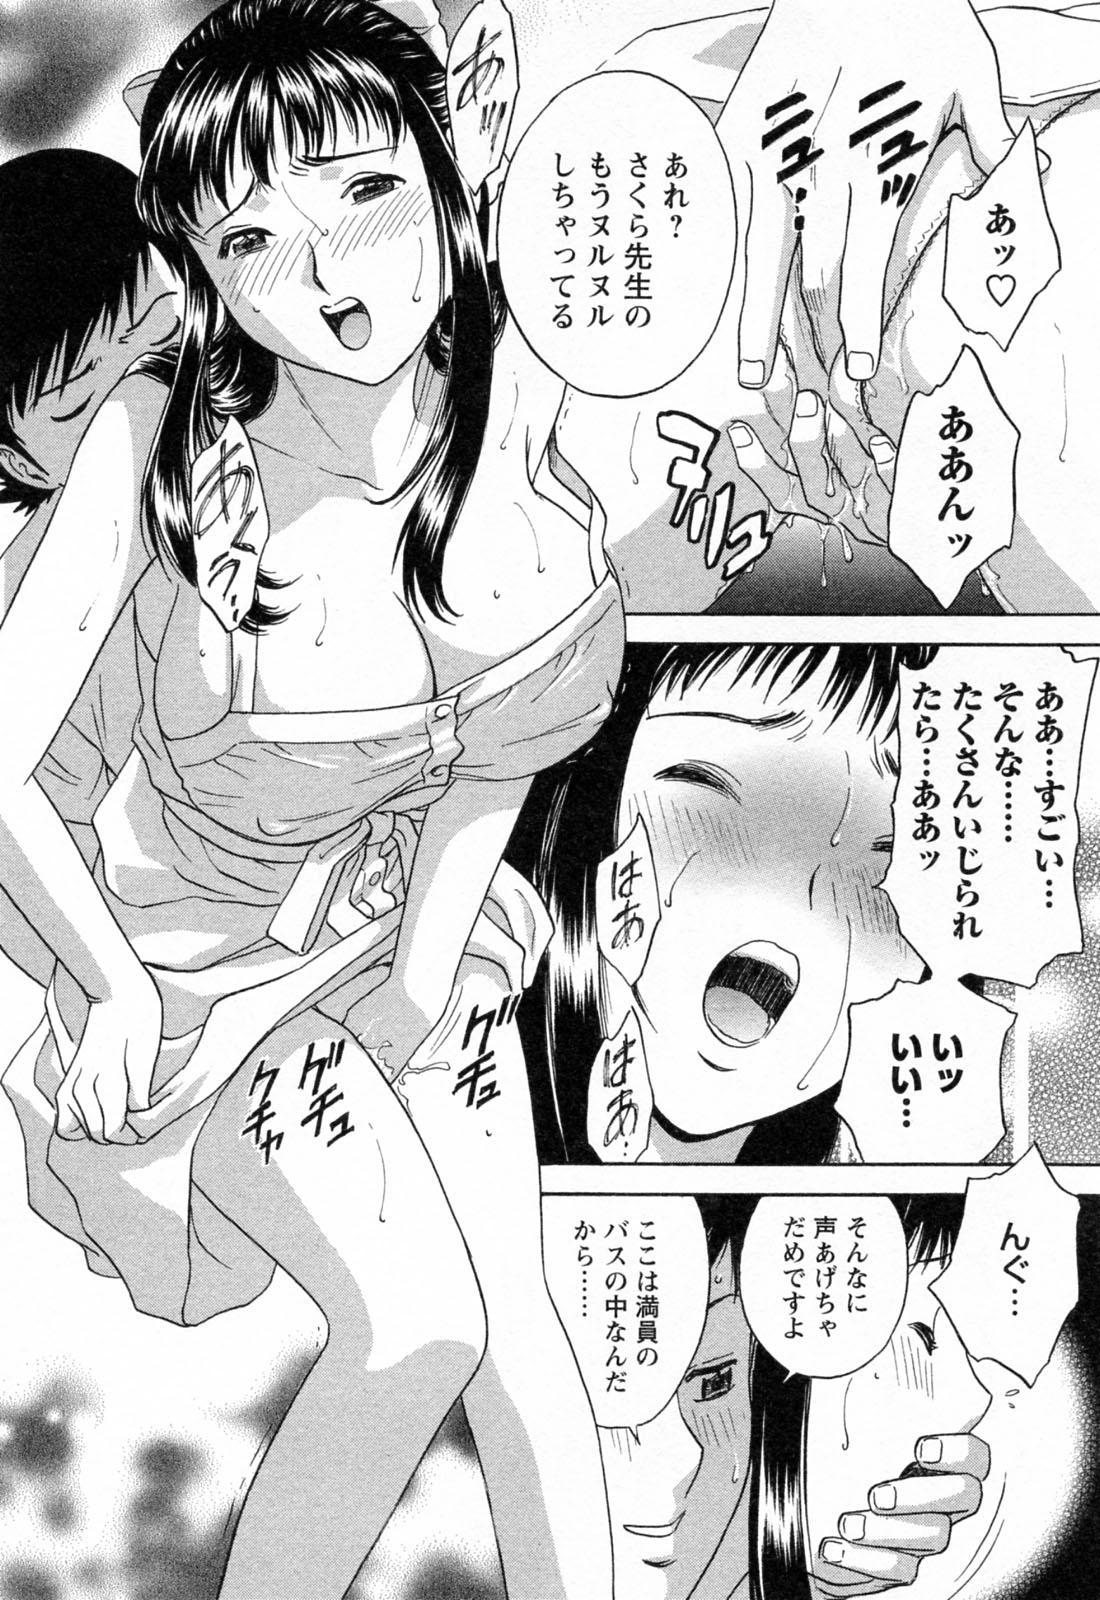 [Hidemaru] Mo-Retsu! Boin Sensei (Boing Boing Teacher) Vol.4 85